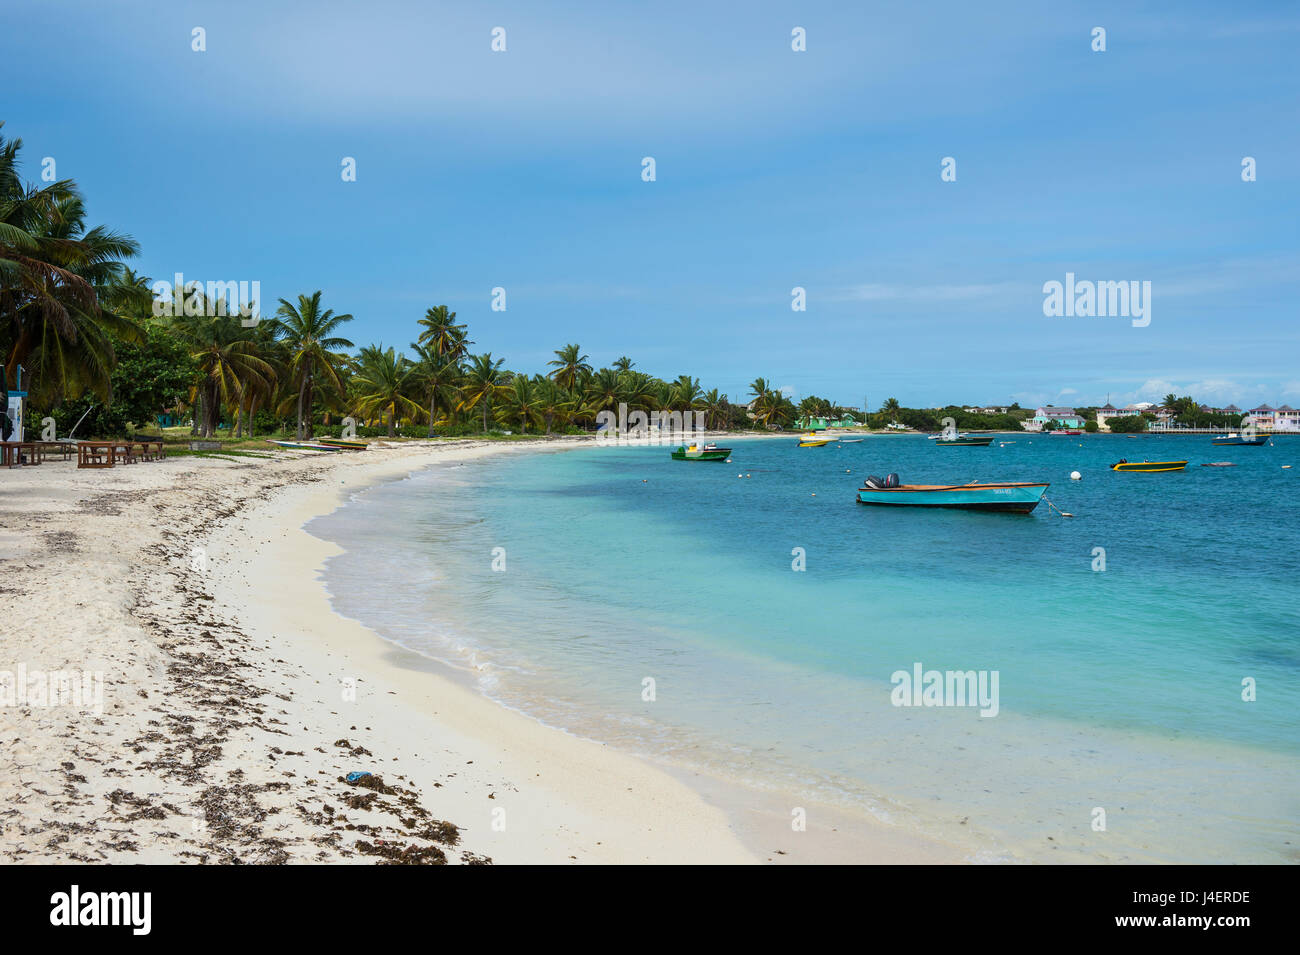 World class Shoal Bay East Beach, Anguilla, territoire britannique d'Outremer, Antilles, Caraïbes, Amérique Centrale Banque D'Images